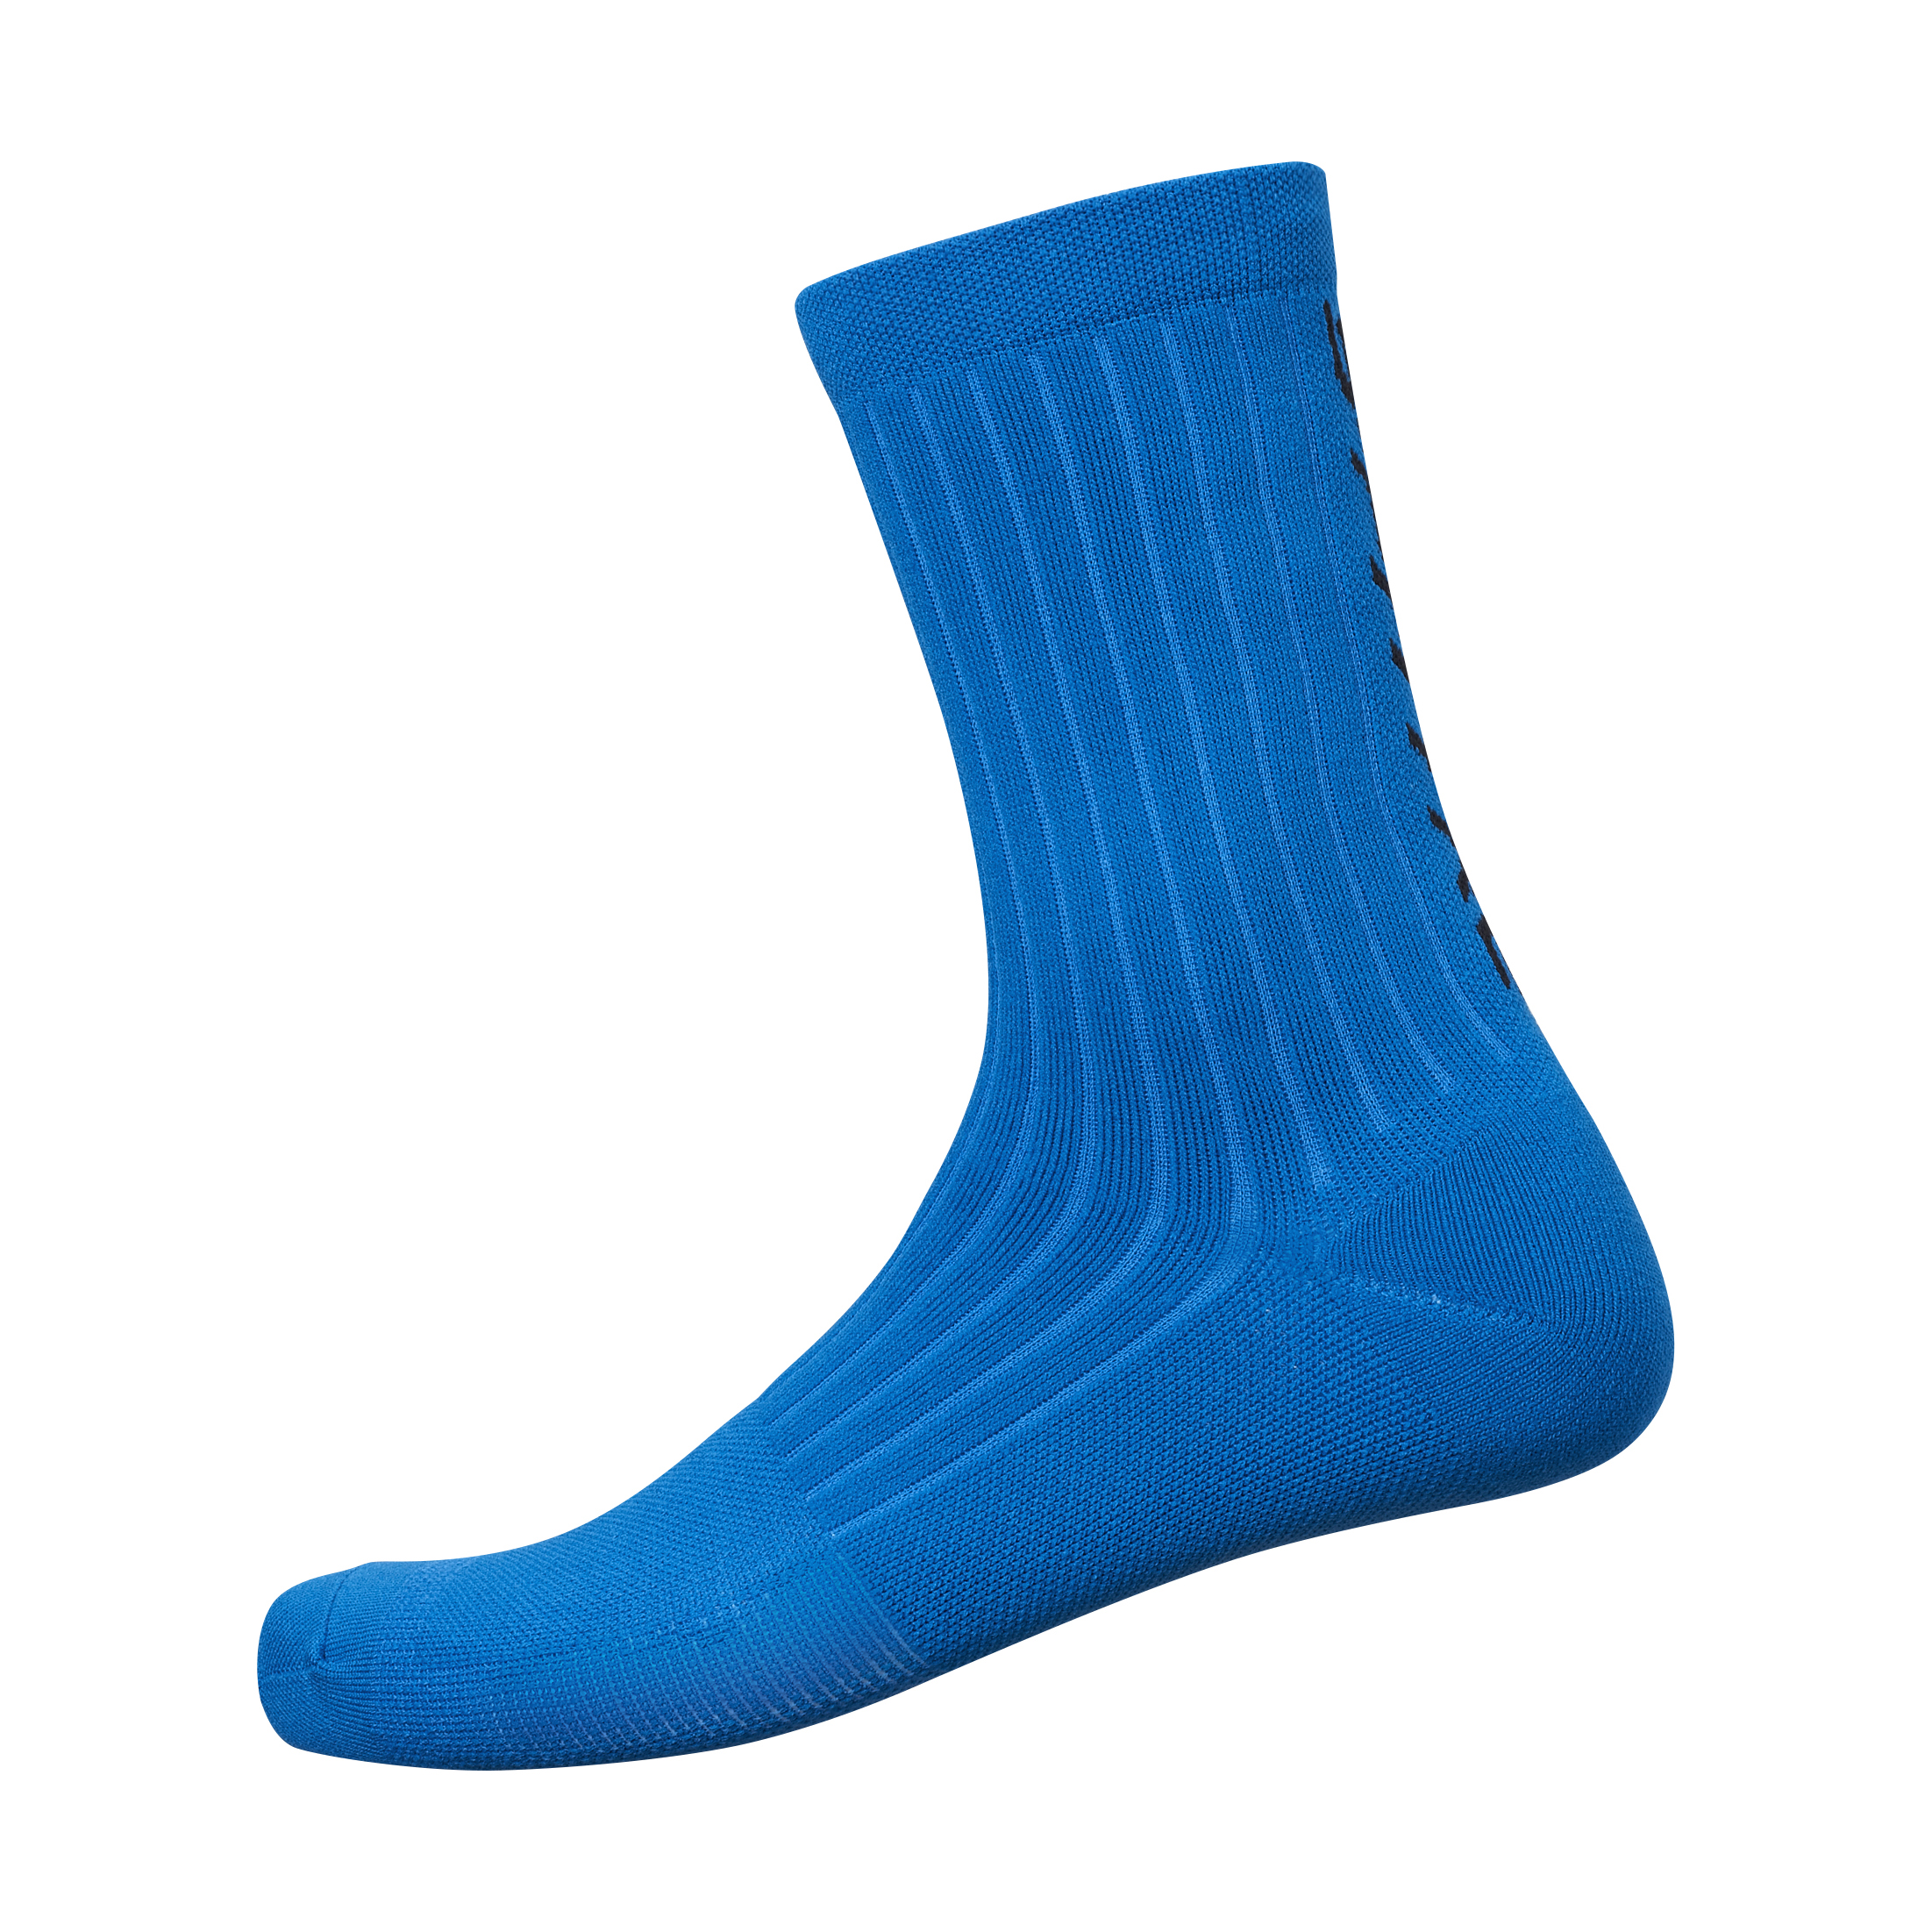 SHIMANO S-PHYRE FLASH ponožky, pánské, modrá, 36-40